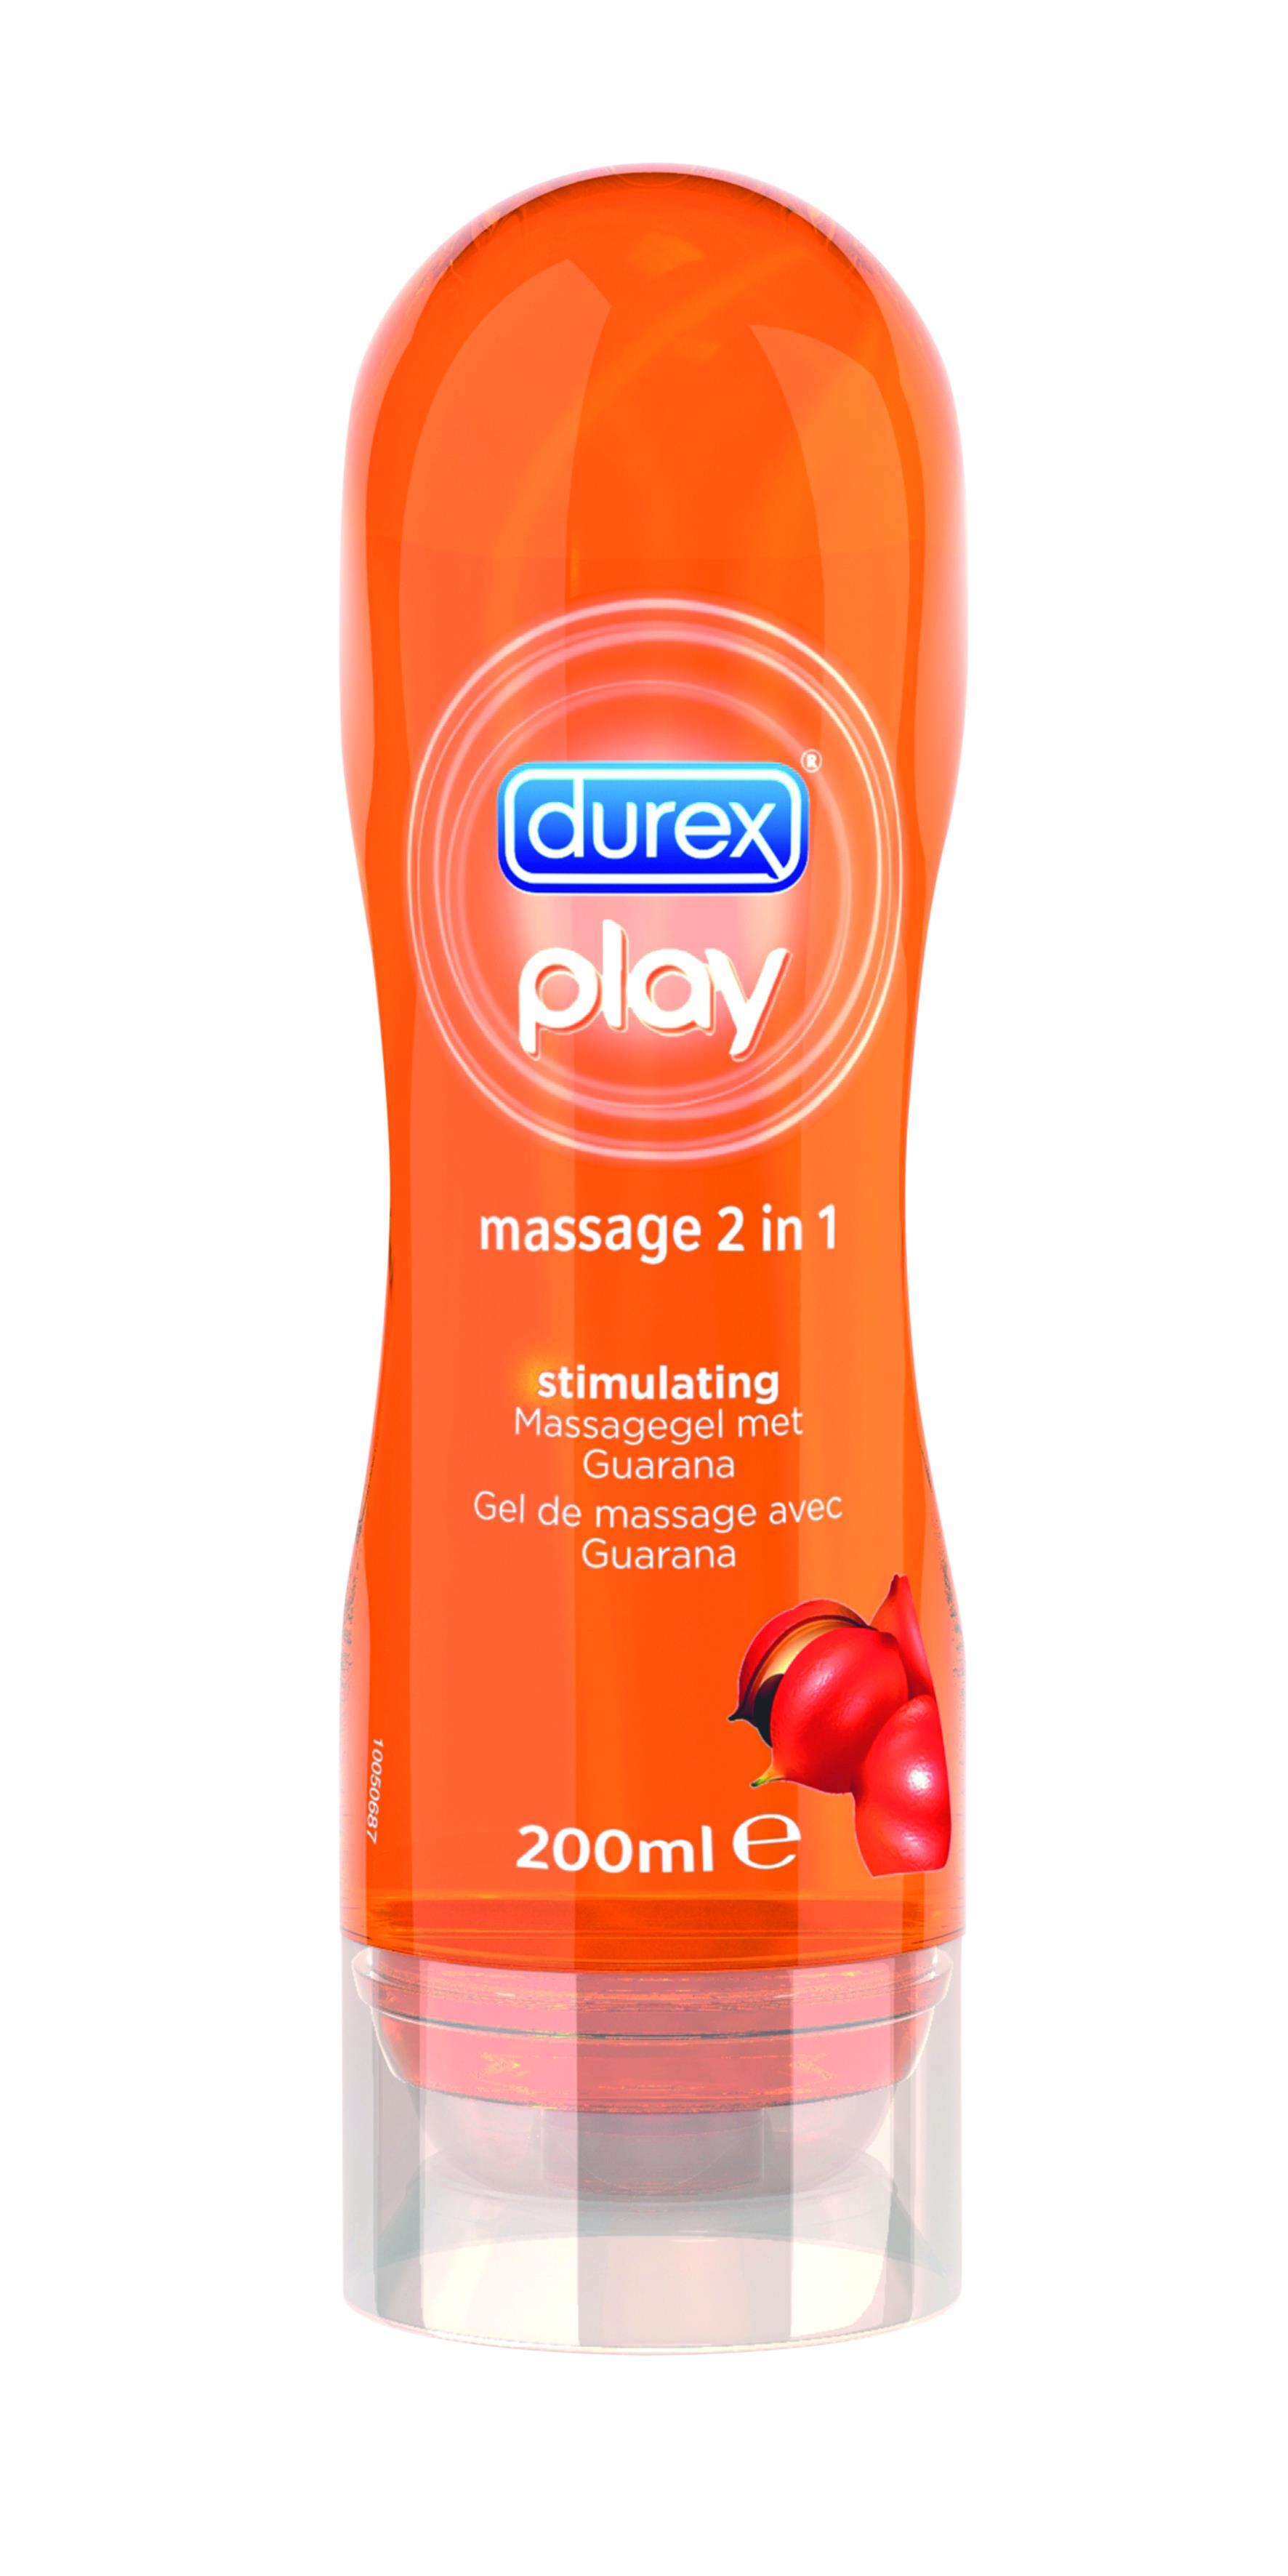 Durex Play Massagegel 2in1stimulating